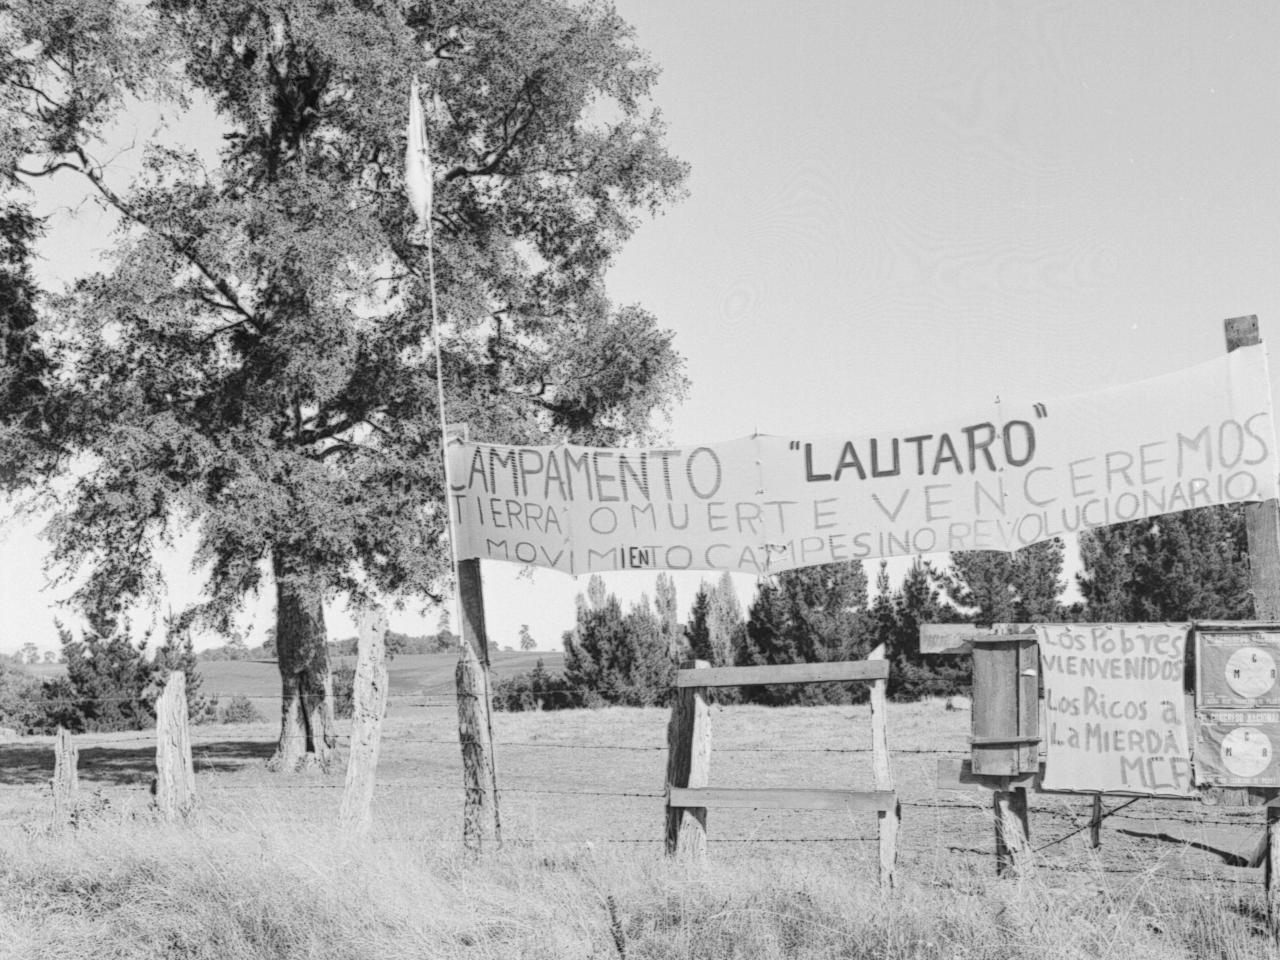 Temuco: Campamento Lautaro tierra o muerte venceremos Movimiento Campesino Revolucionario. La entrada  está  con  afiches del Che y del Mir. En la organización de los mapuches respecto de toma de tierras e instalación de campamentos, el MIR y el MCR